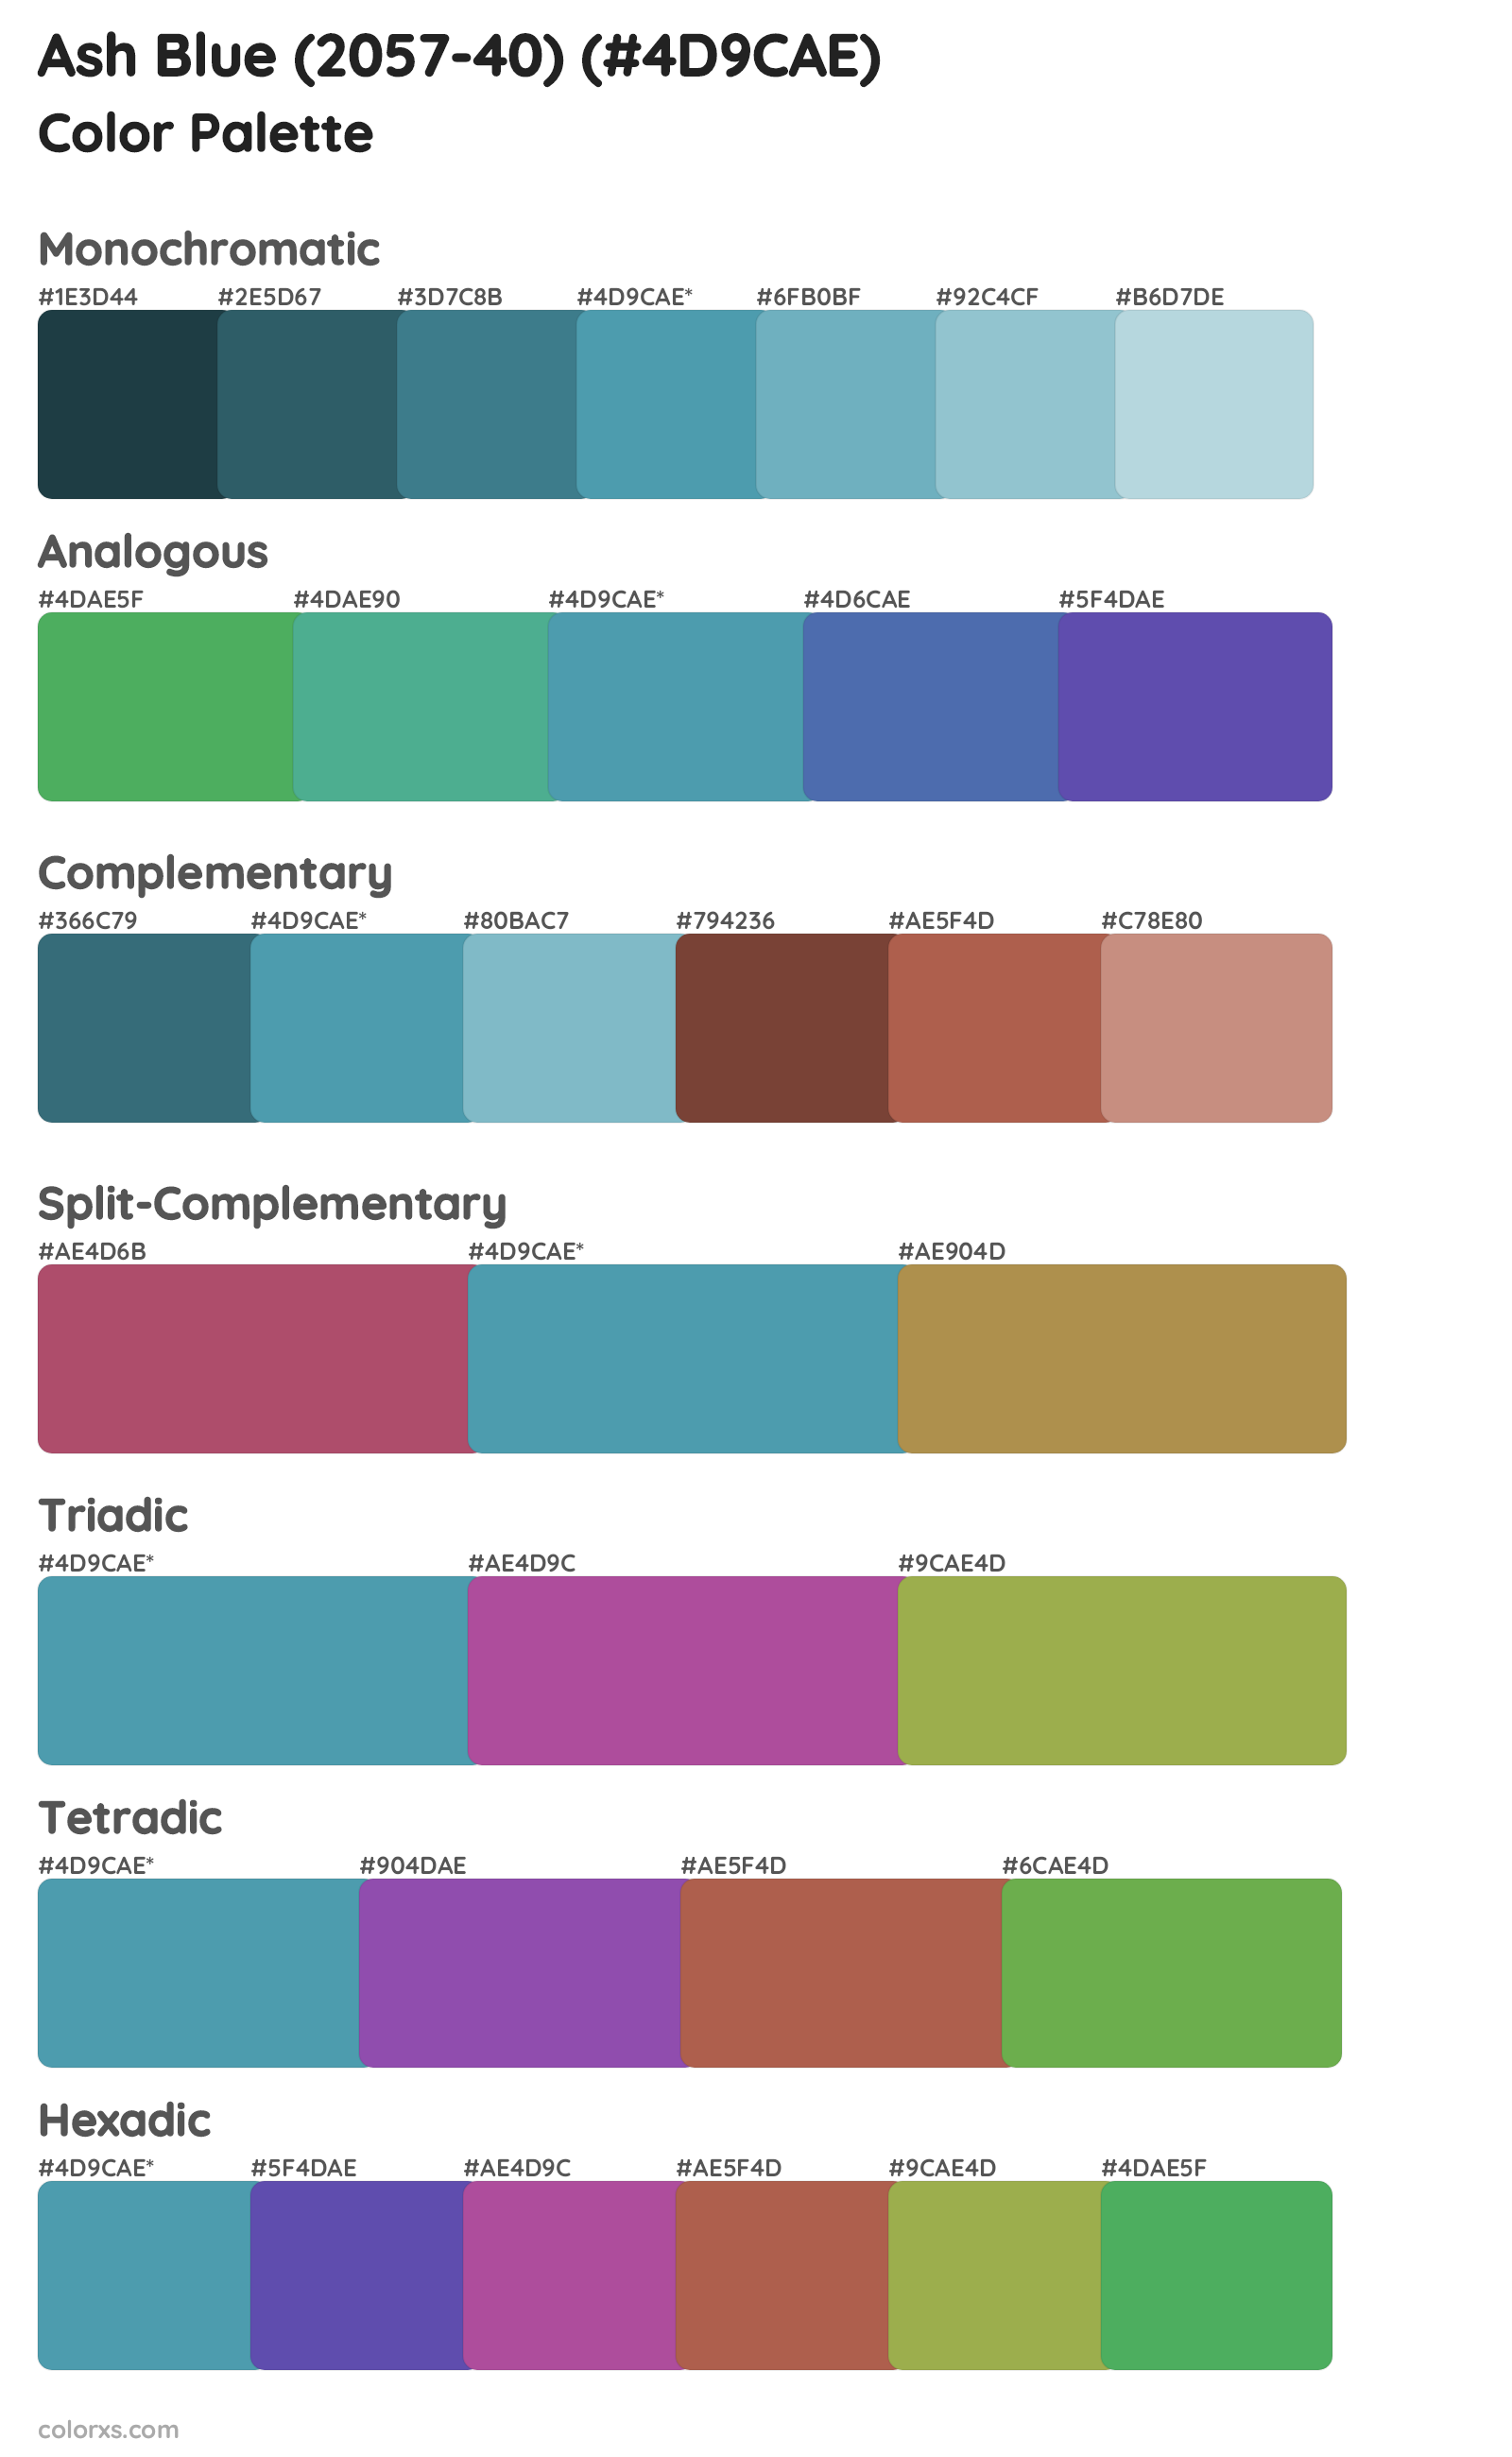 Ash Blue (2057-40) Color Scheme Palettes